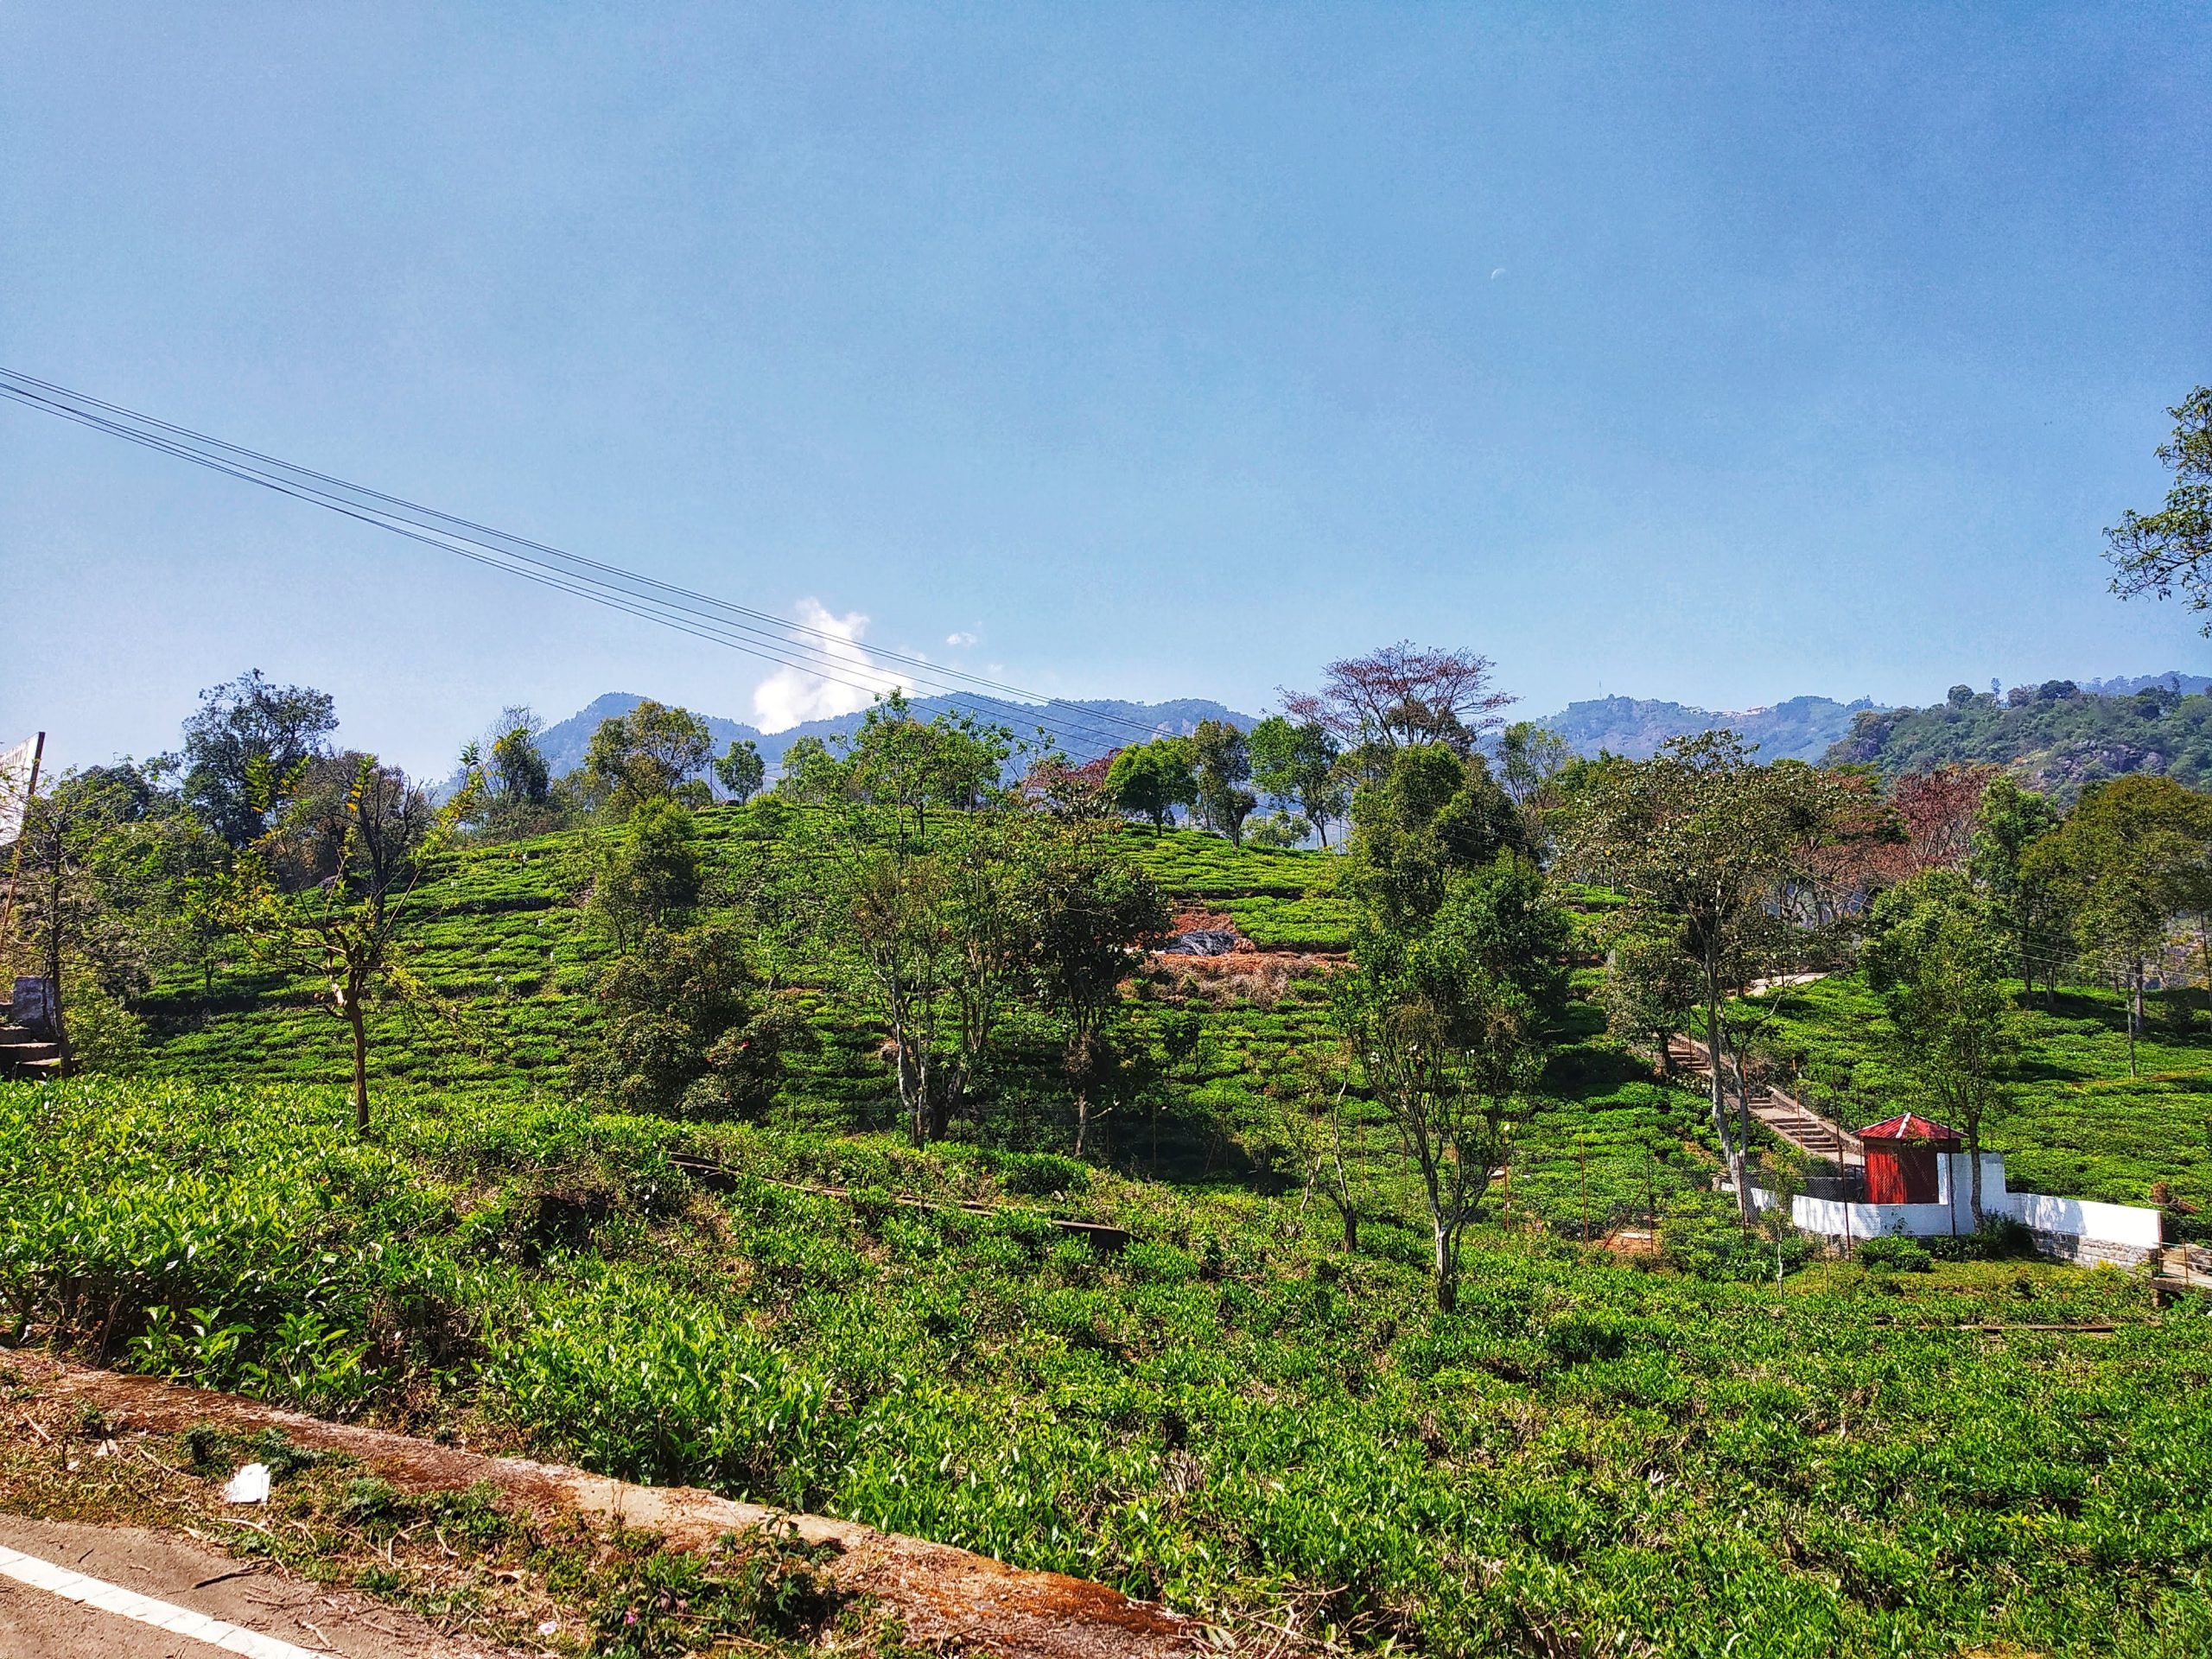 Tea estate at kothagiri